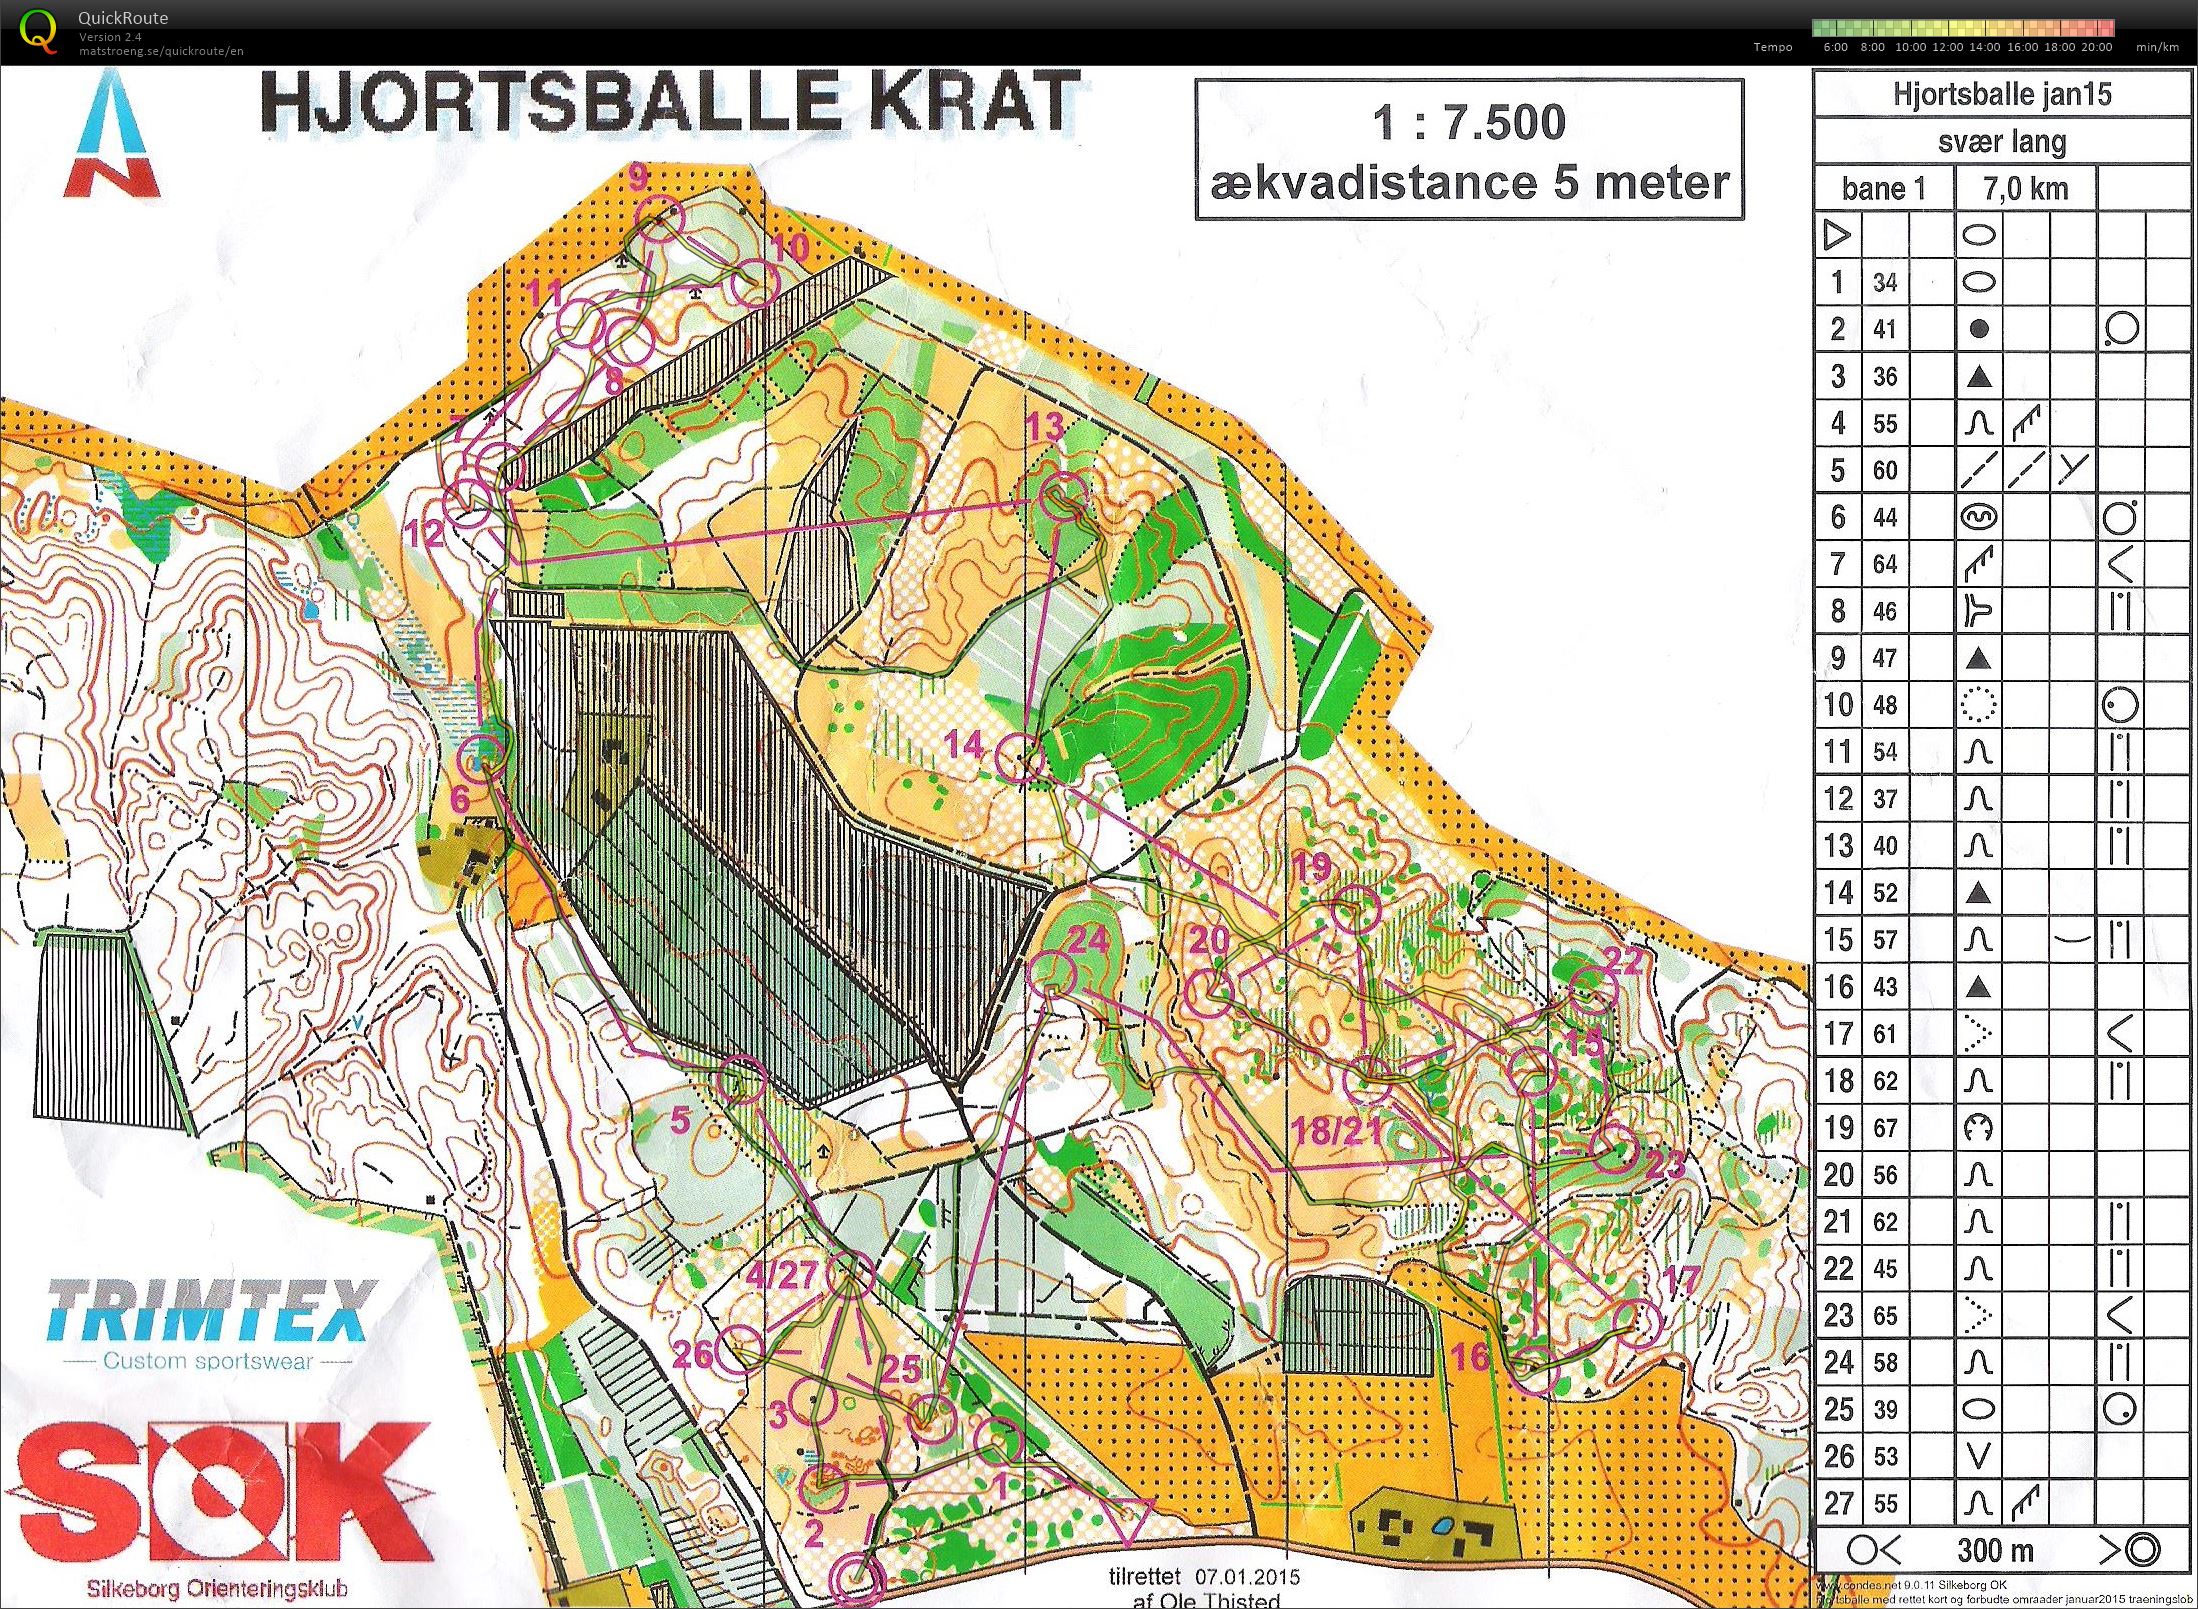 Hjortsballe Krat - Bane 1 - 7 km. (31.01.2015)